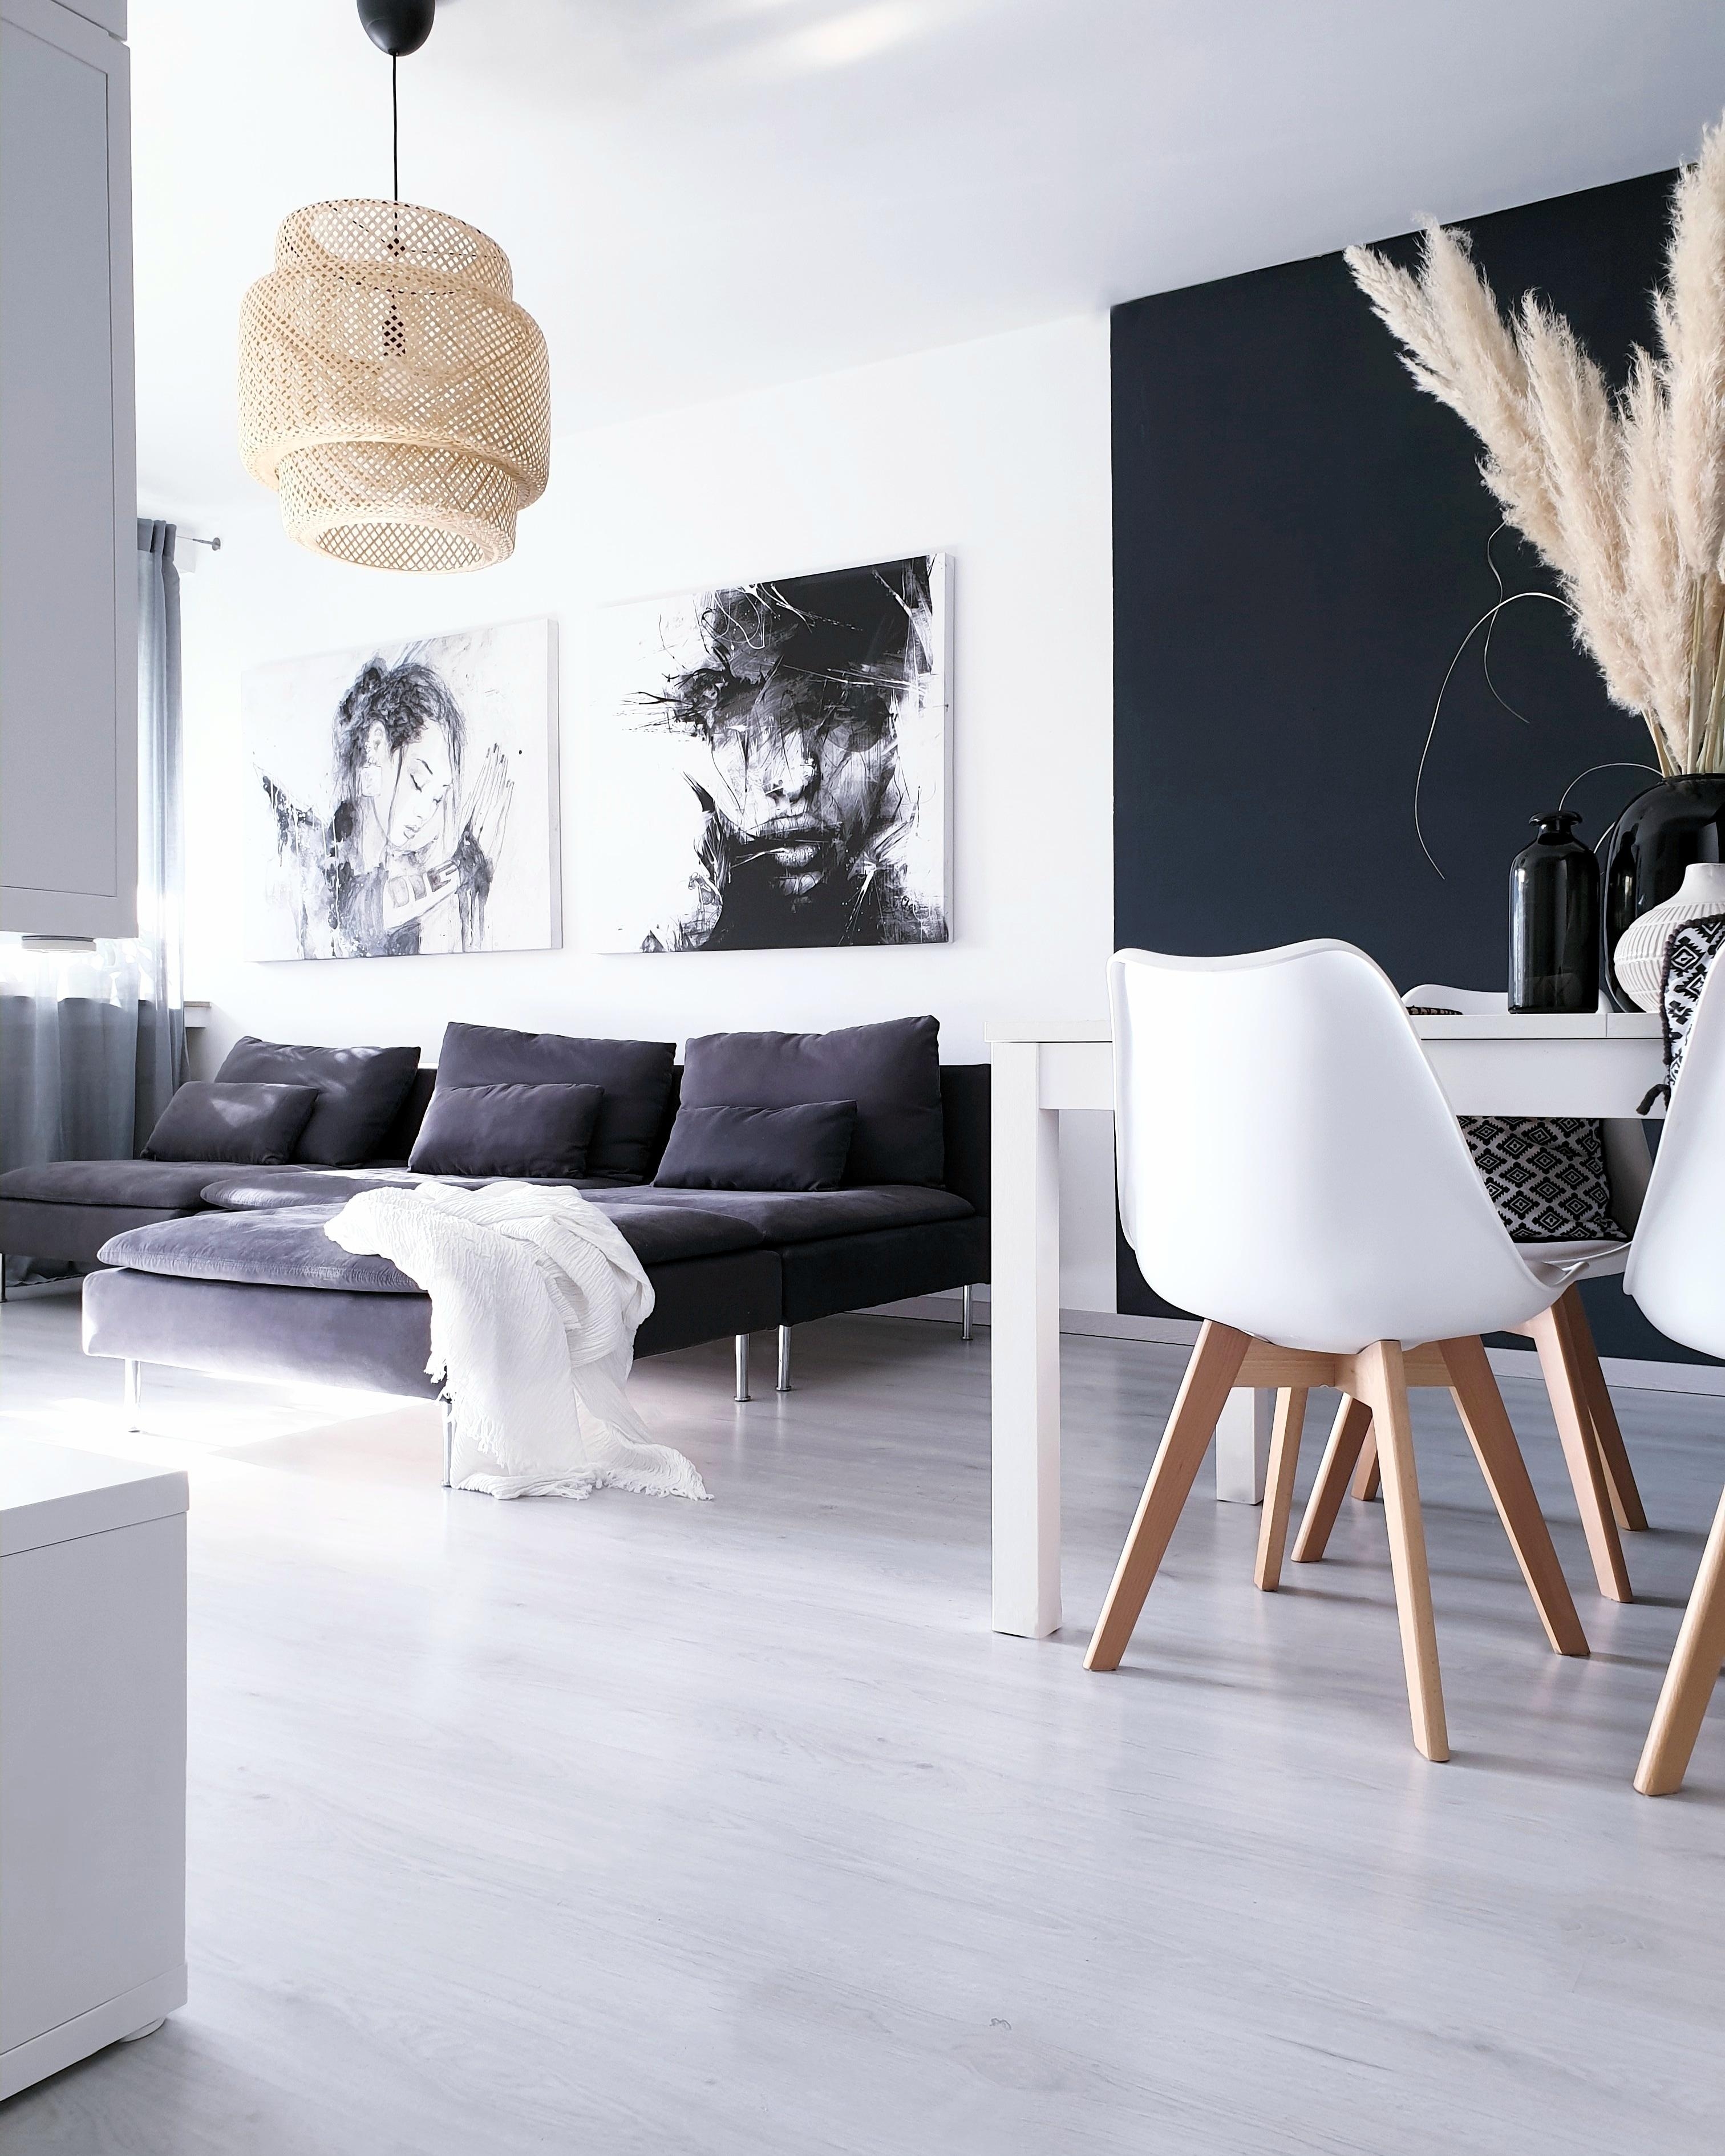 Fehlt nur noch ein schöner Teppich 🙂🙃🙂
#söderhamn #couch #couchgarnitur #wohnzimmer #essbereich #wandbilder